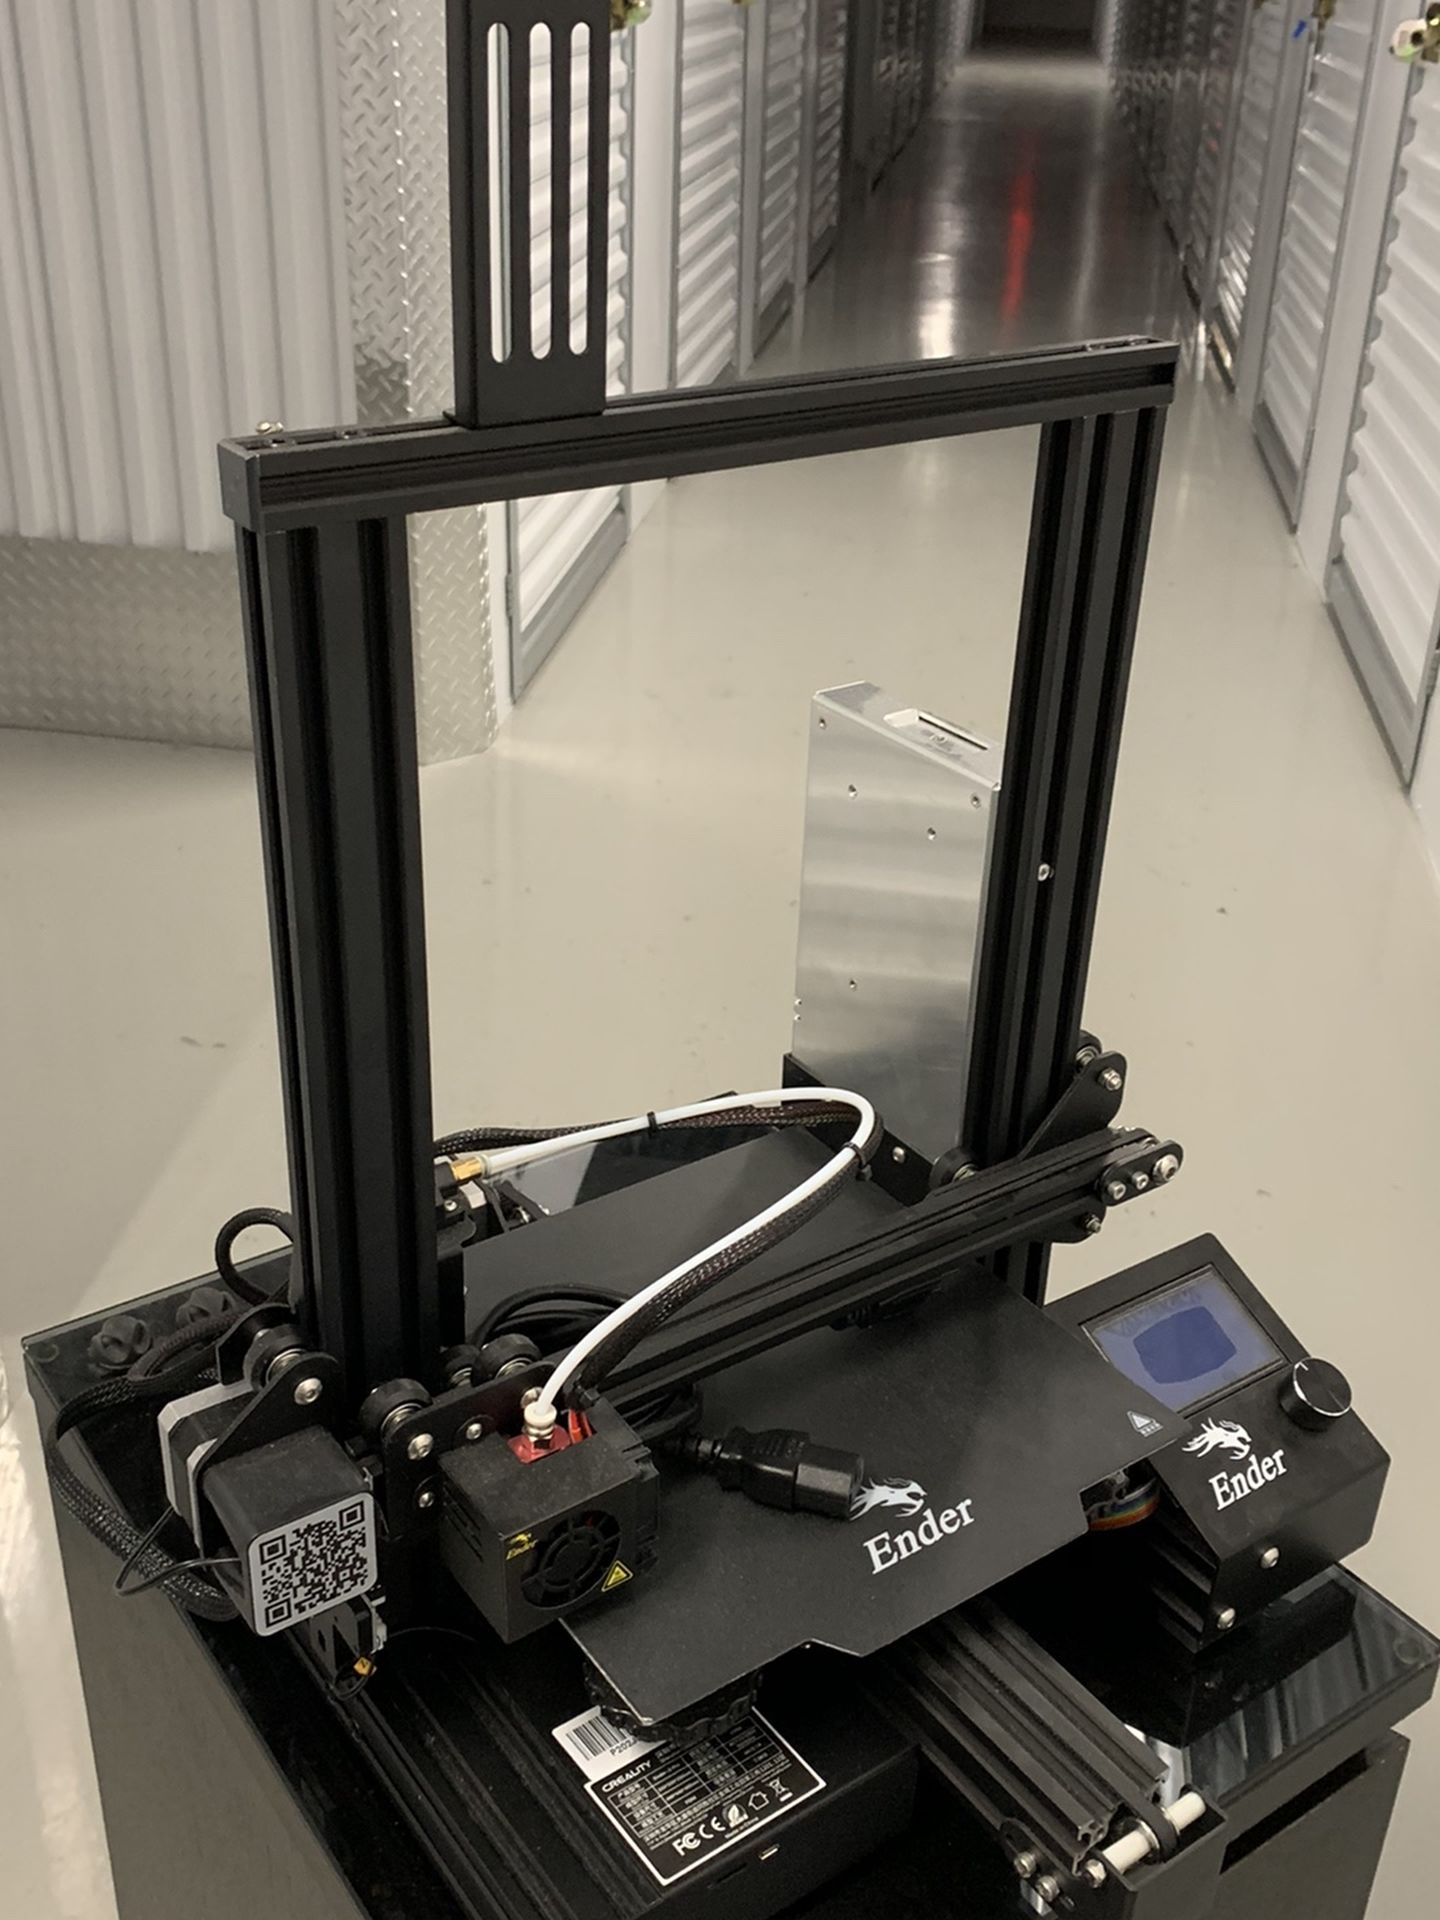 Ender PRO 3 3D Printer and 4 PLA Filament Rolls